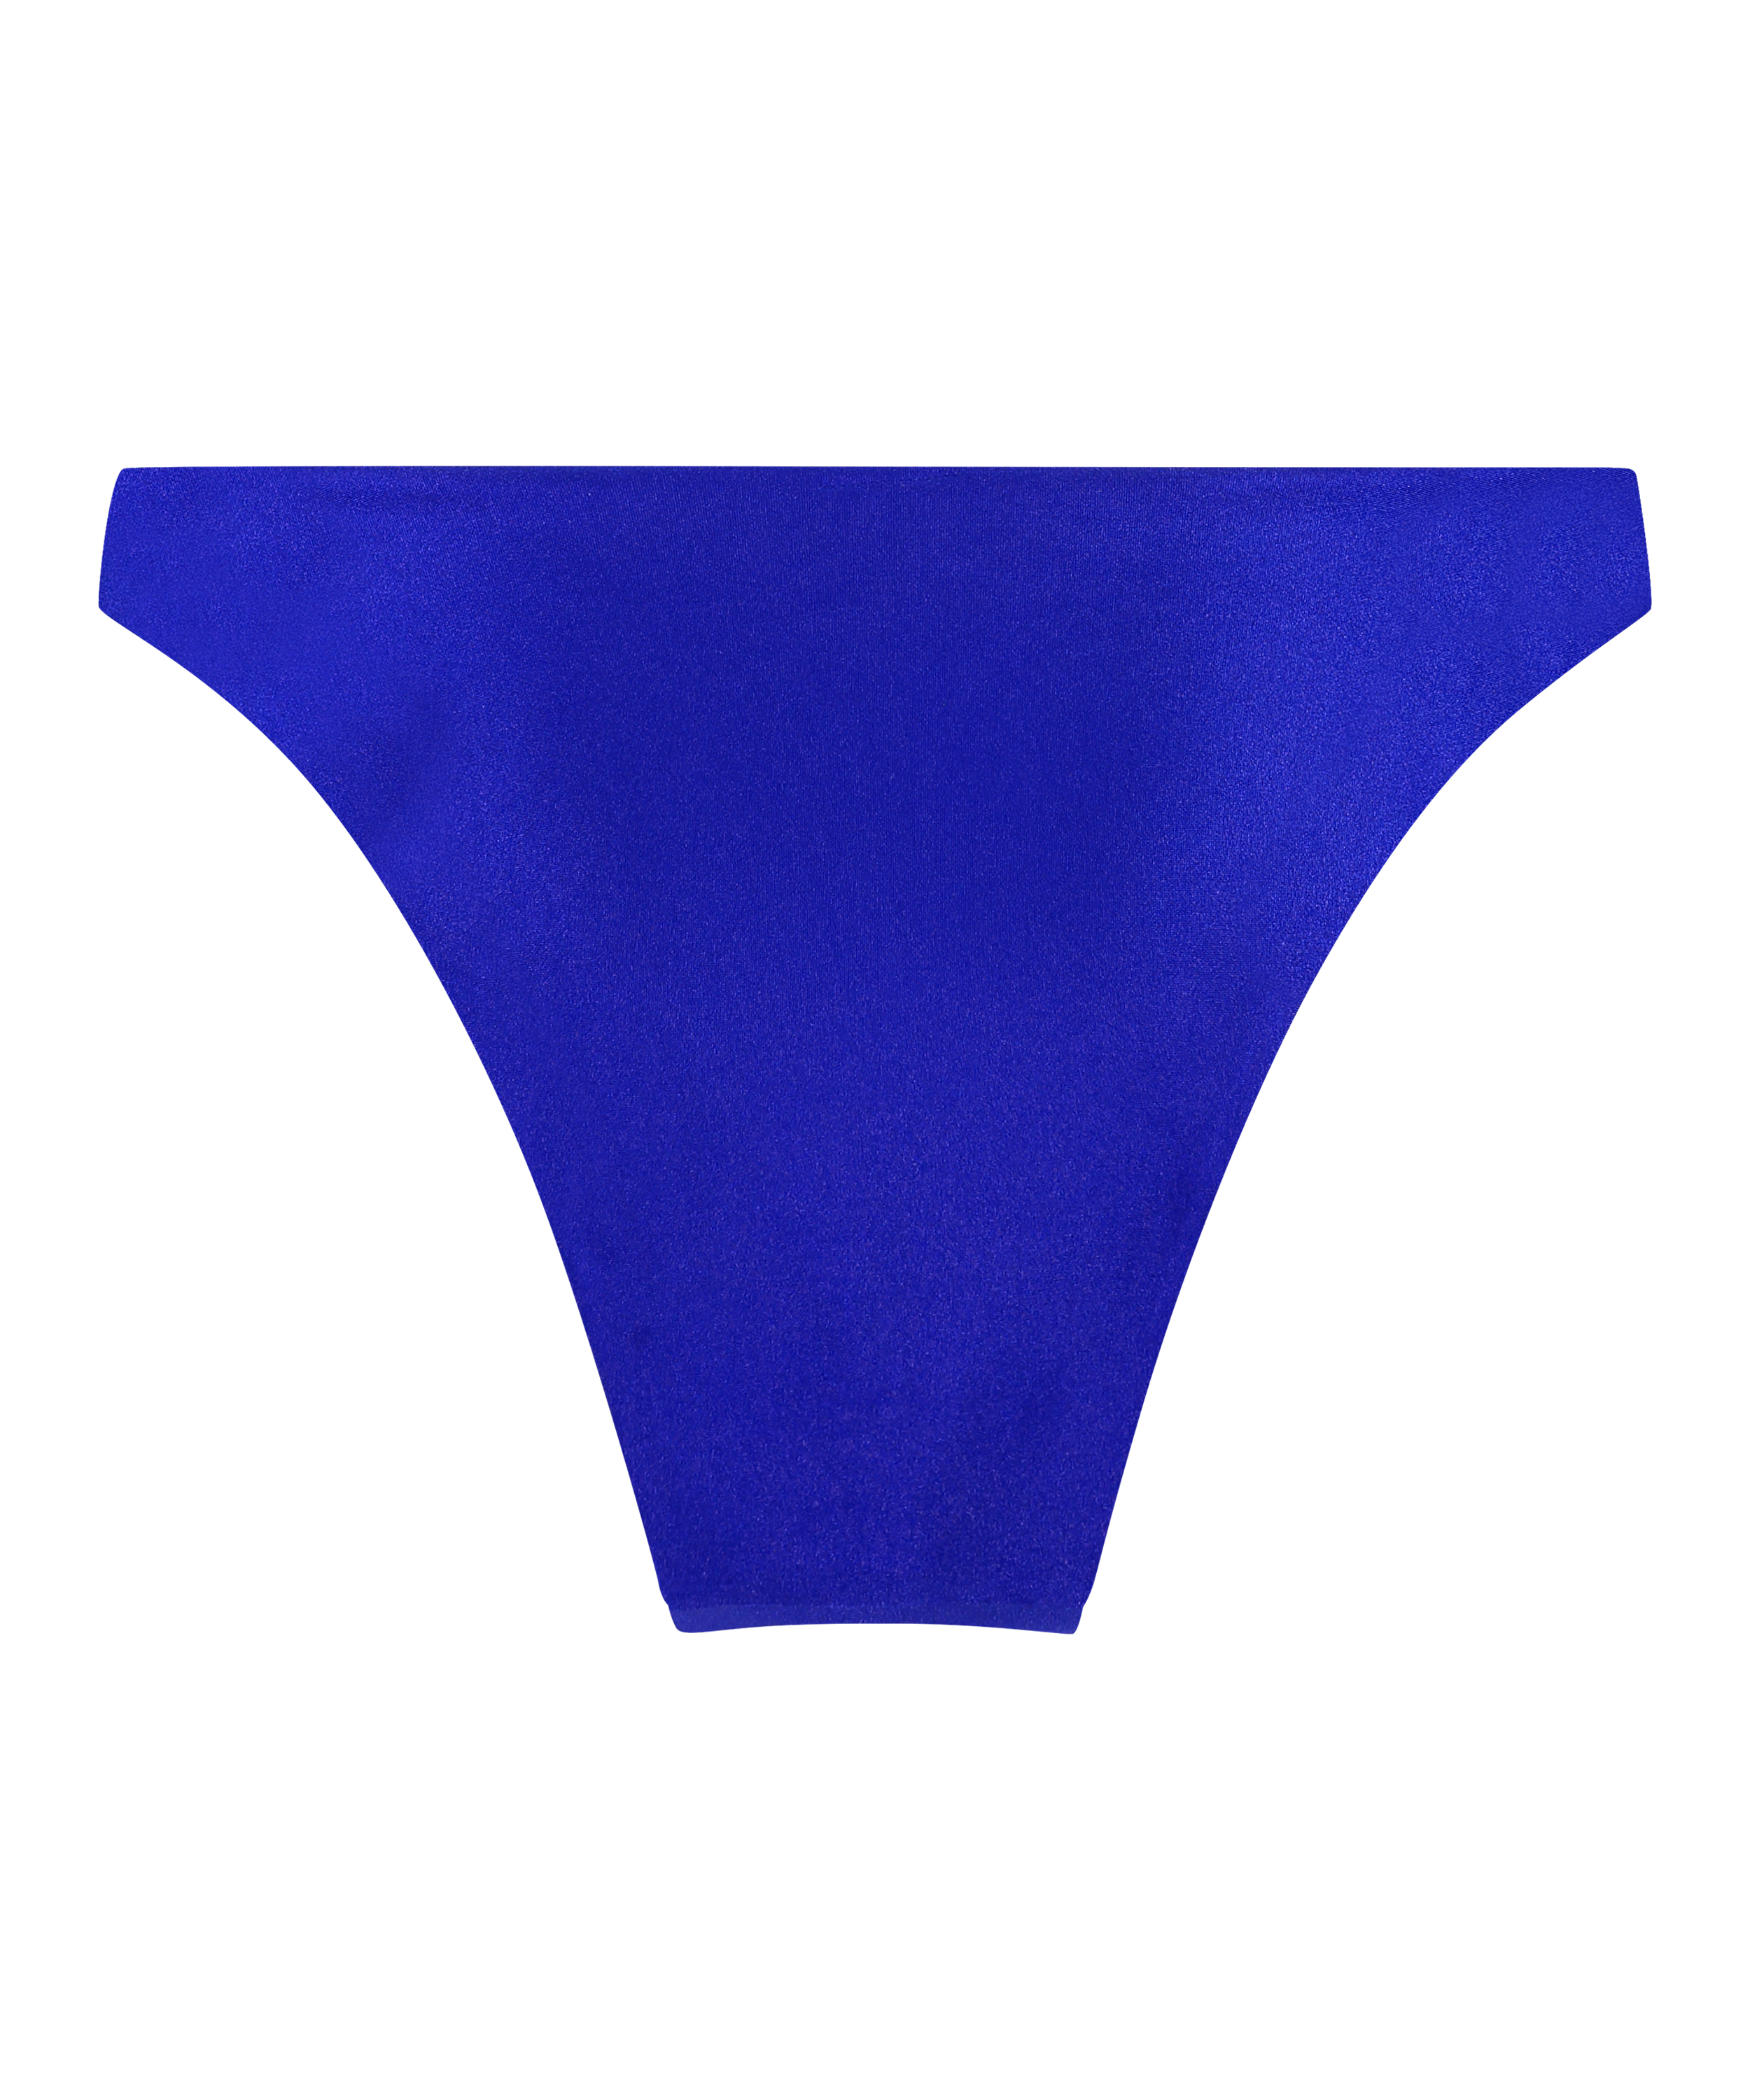 Bari High-Leg Bikini Bottoms, Blue, main